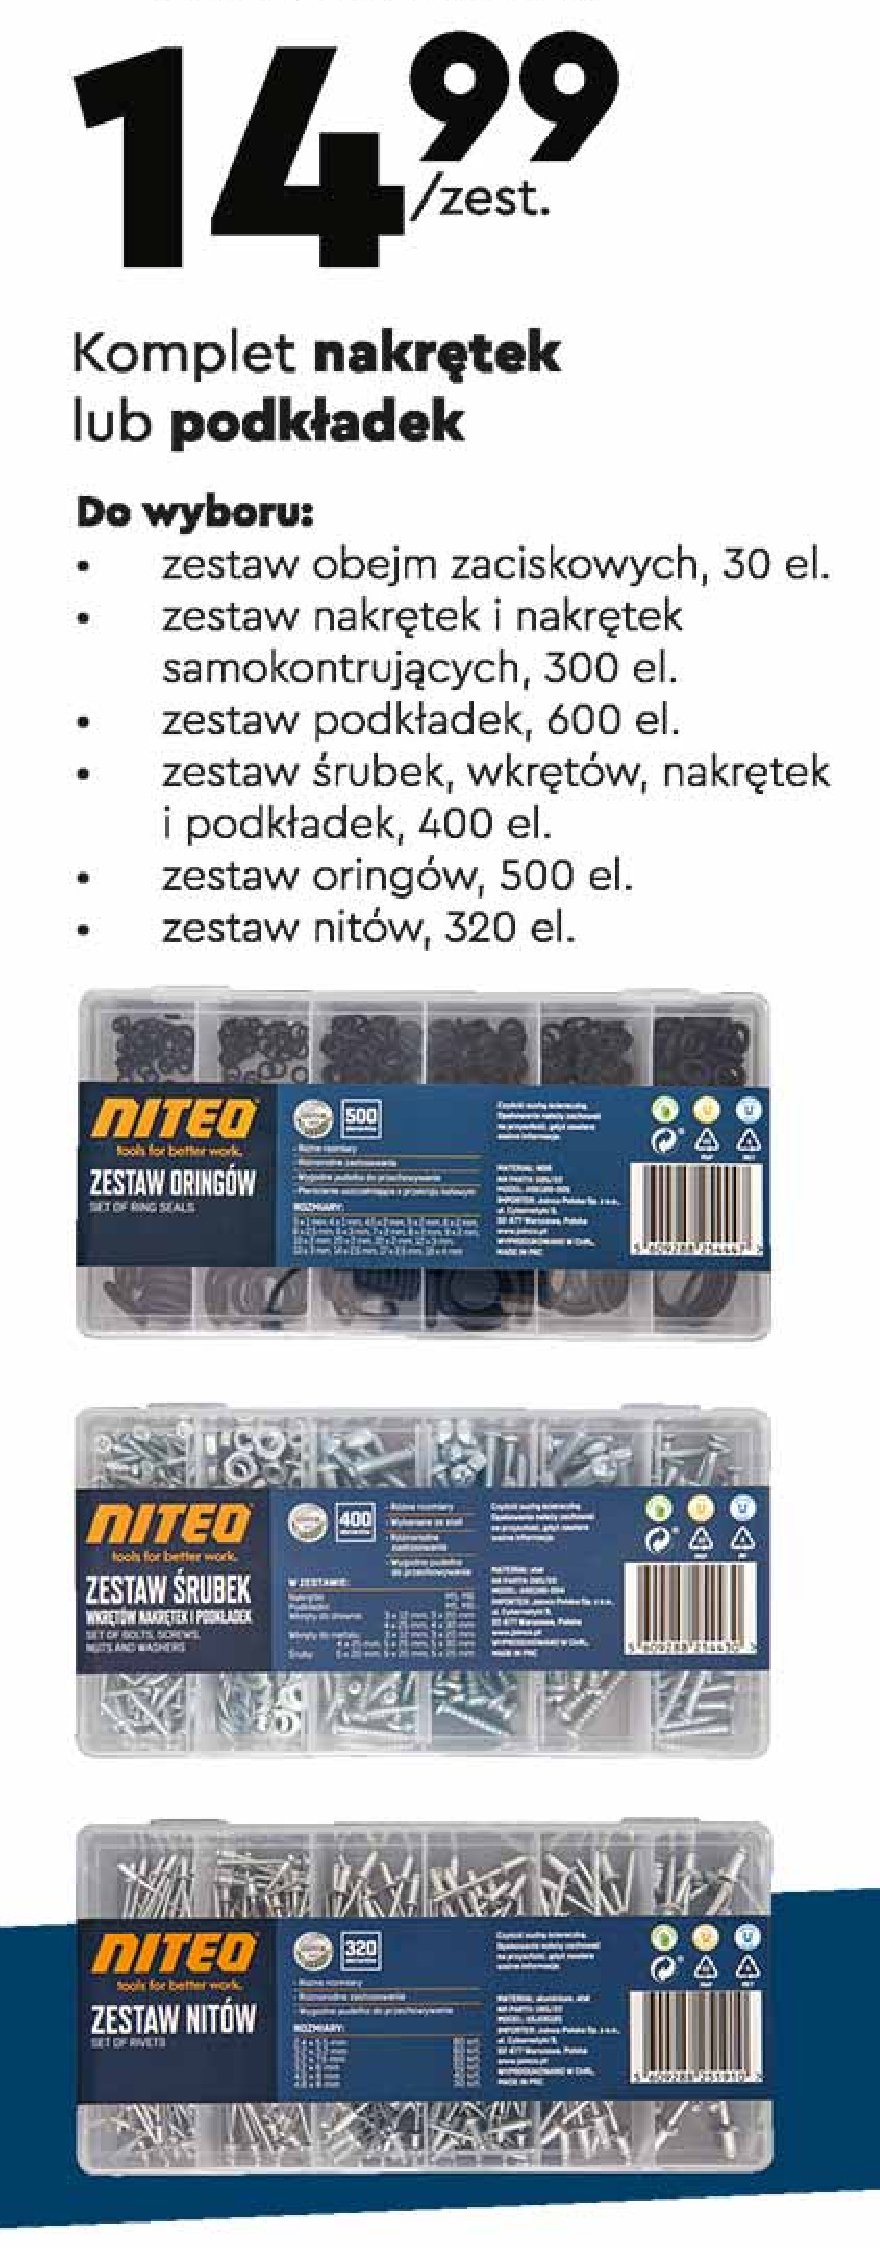 Zestaw oringów Niteo tools promocja